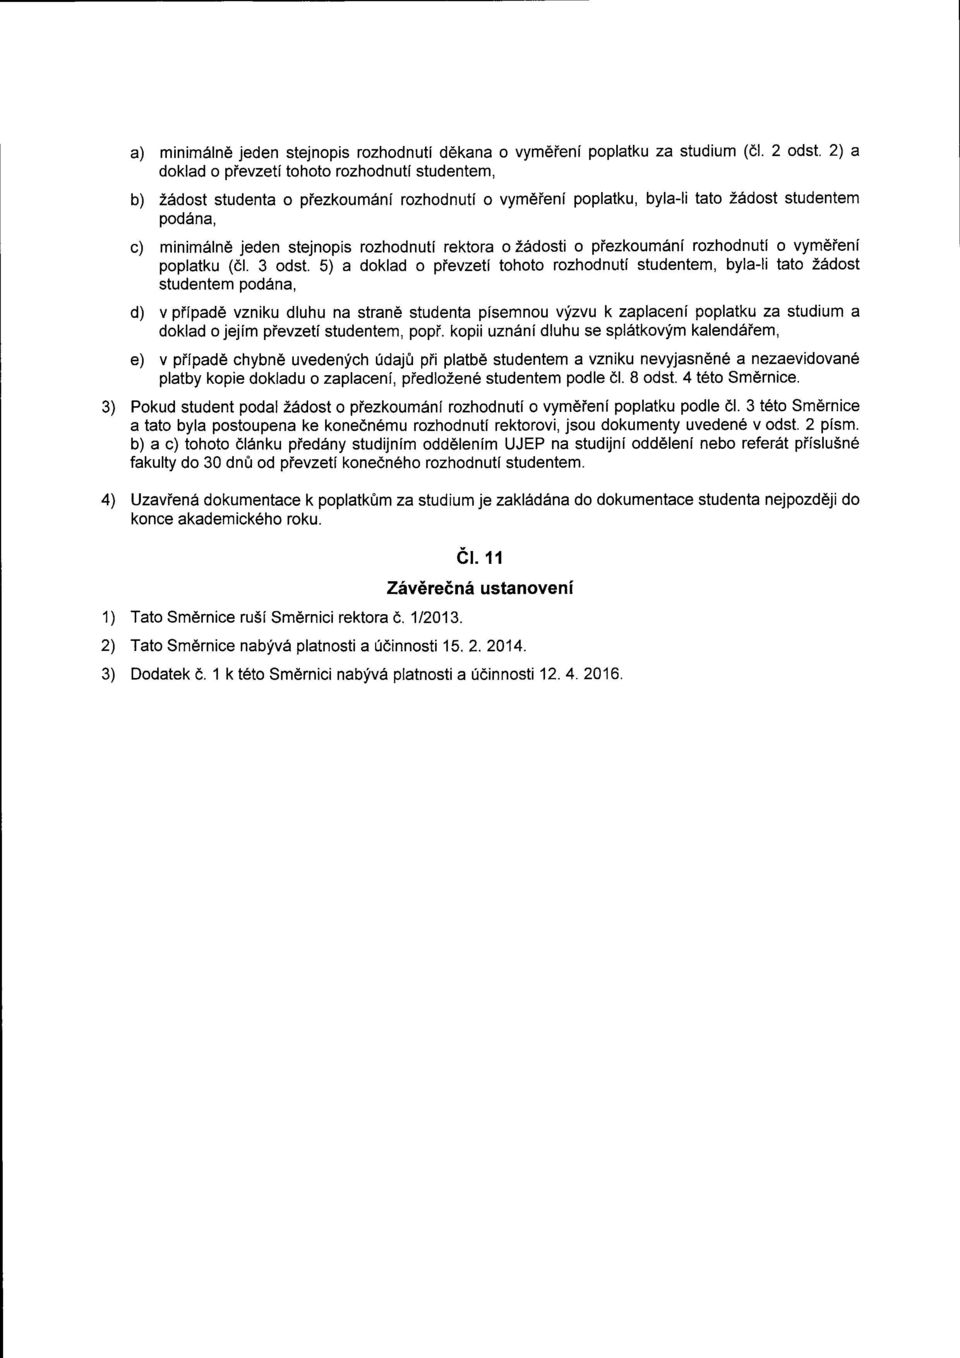 rektora o Zdrdosti o piezkoumini rozhodnuti o vym6ieni poplatku (dl. 3 odst.